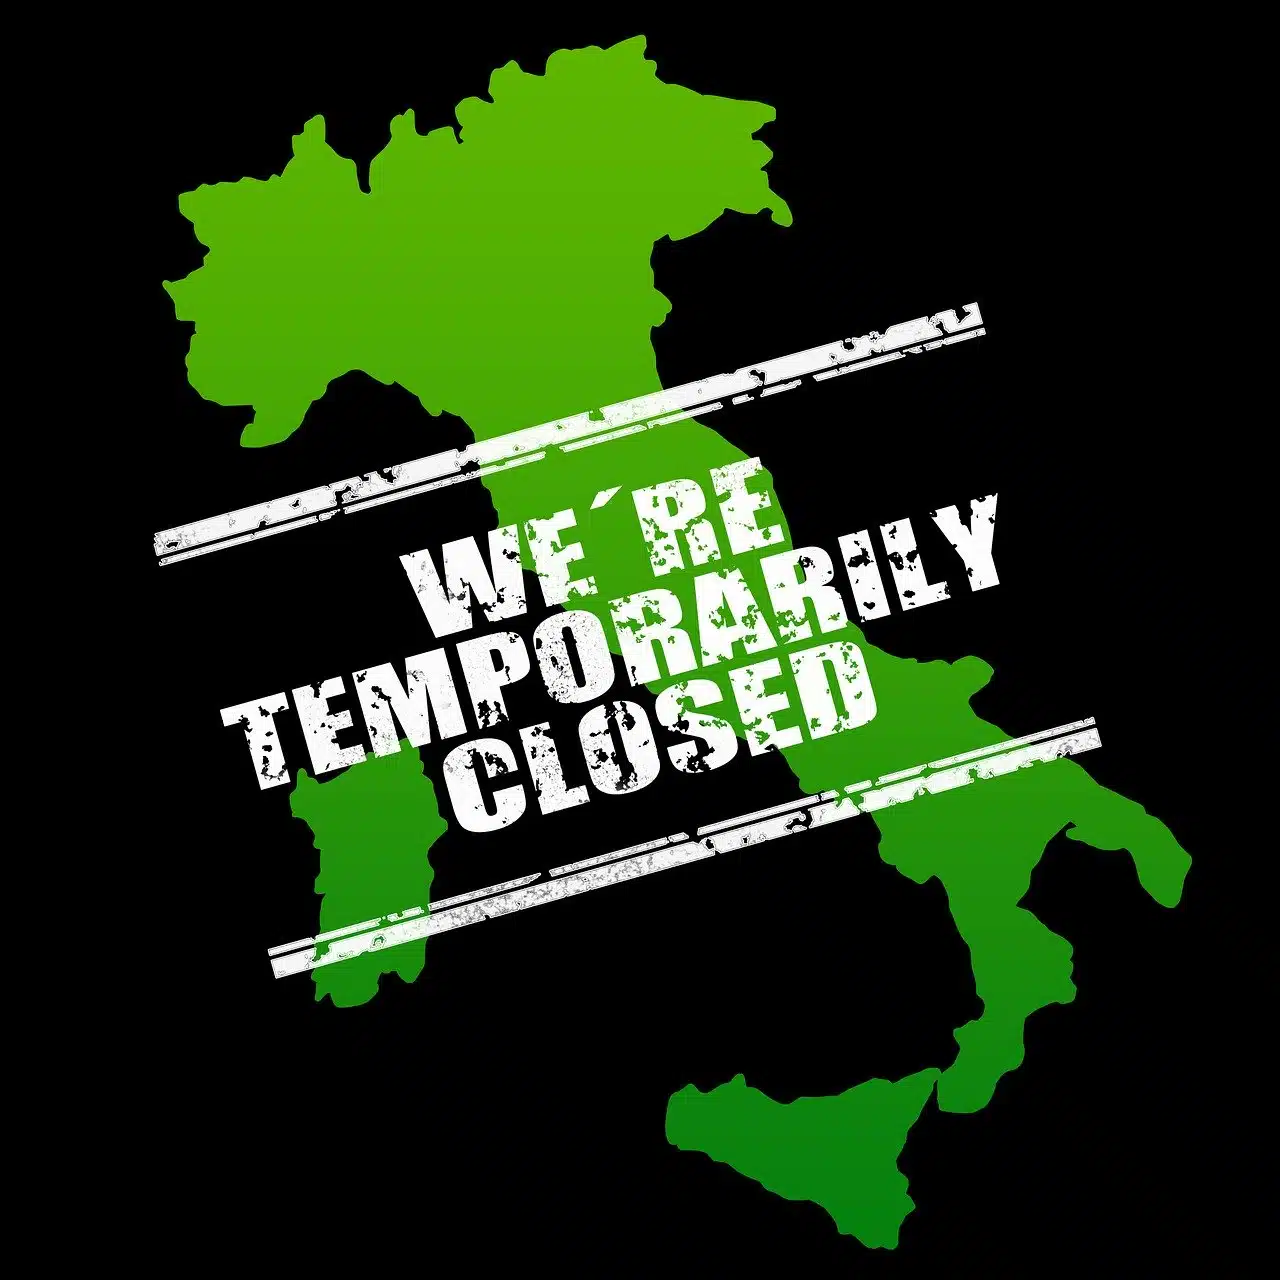 Italia colorata di verde (emergenza sanitaria) con scritta "siamo temporaneamente chiusi"r